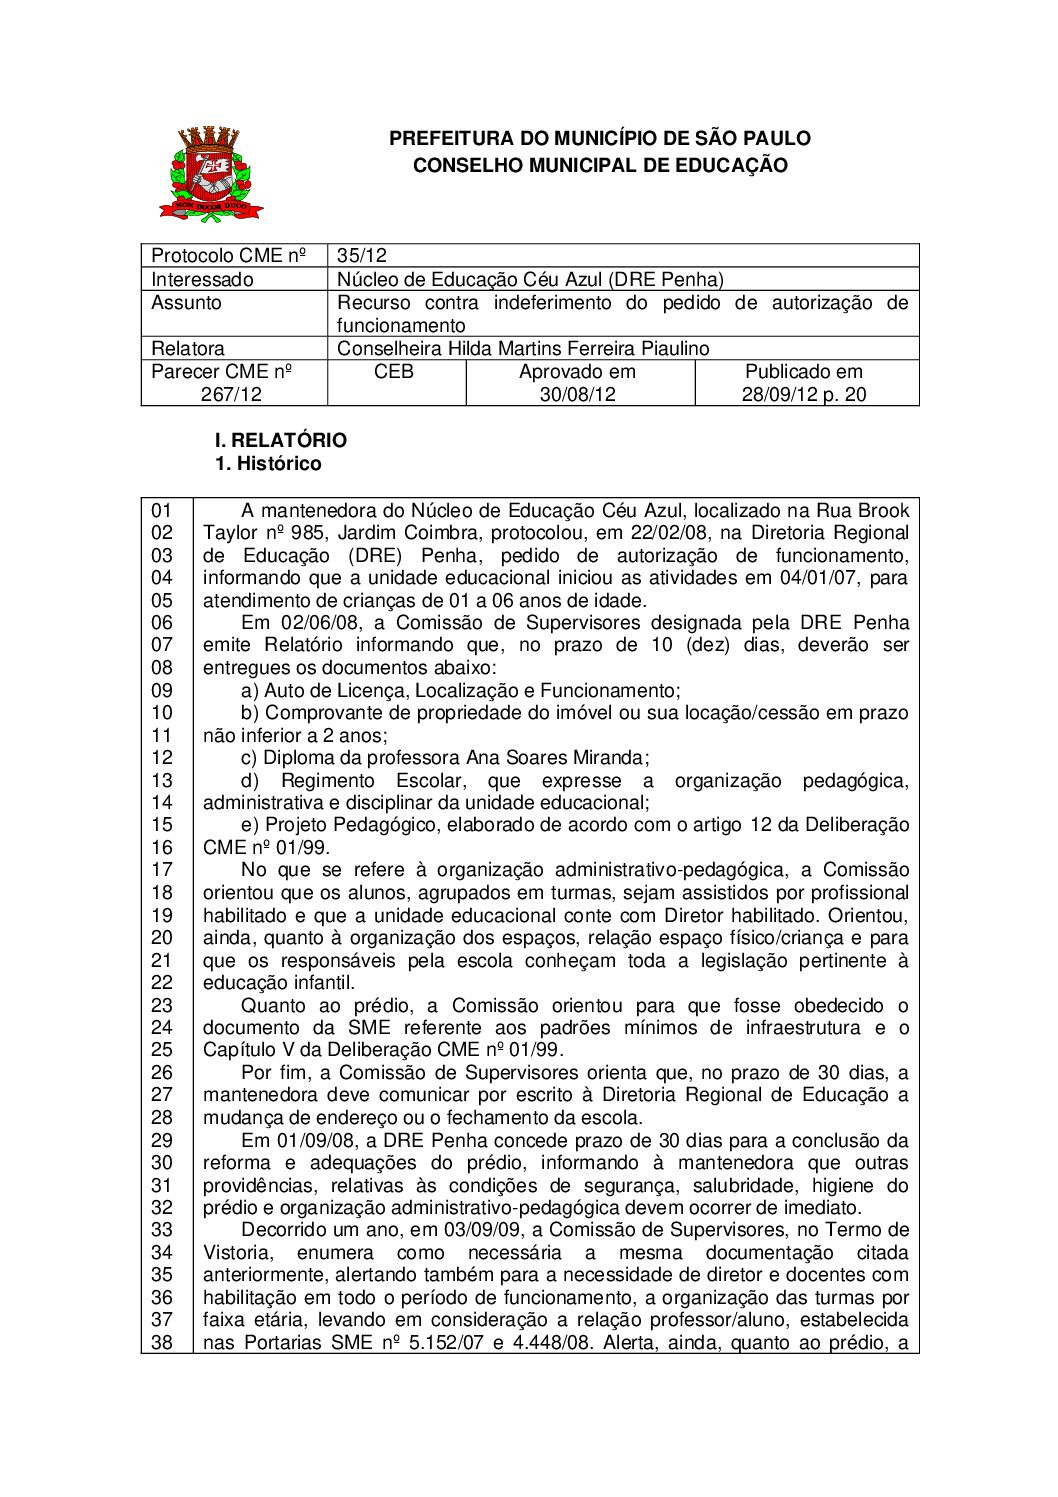 Parecer CME nº 267/2012 - Núcleo de Educação Céu Azul (DRE Penha) - Recurso contra indeferimento do pedido de autorização de funcionamento 